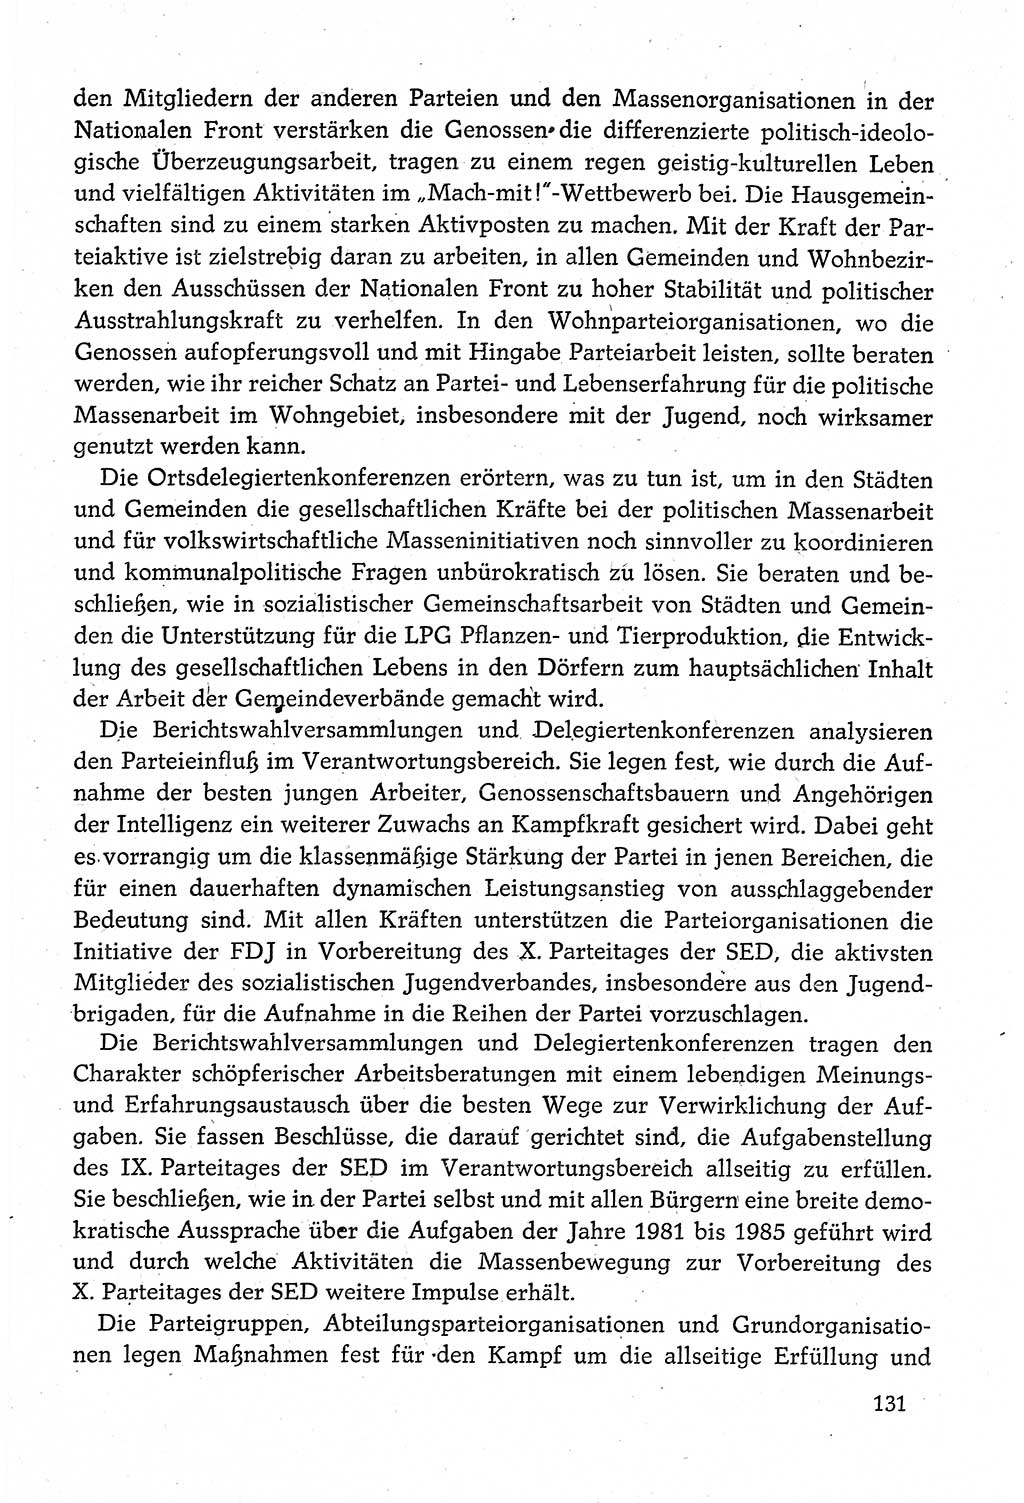 Dokumente der Sozialistischen Einheitspartei Deutschlands (SED) [Deutsche Demokratische Republik (DDR)] 1980-1981, Seite 131 (Dok. SED DDR 1980-1981, S. 131)